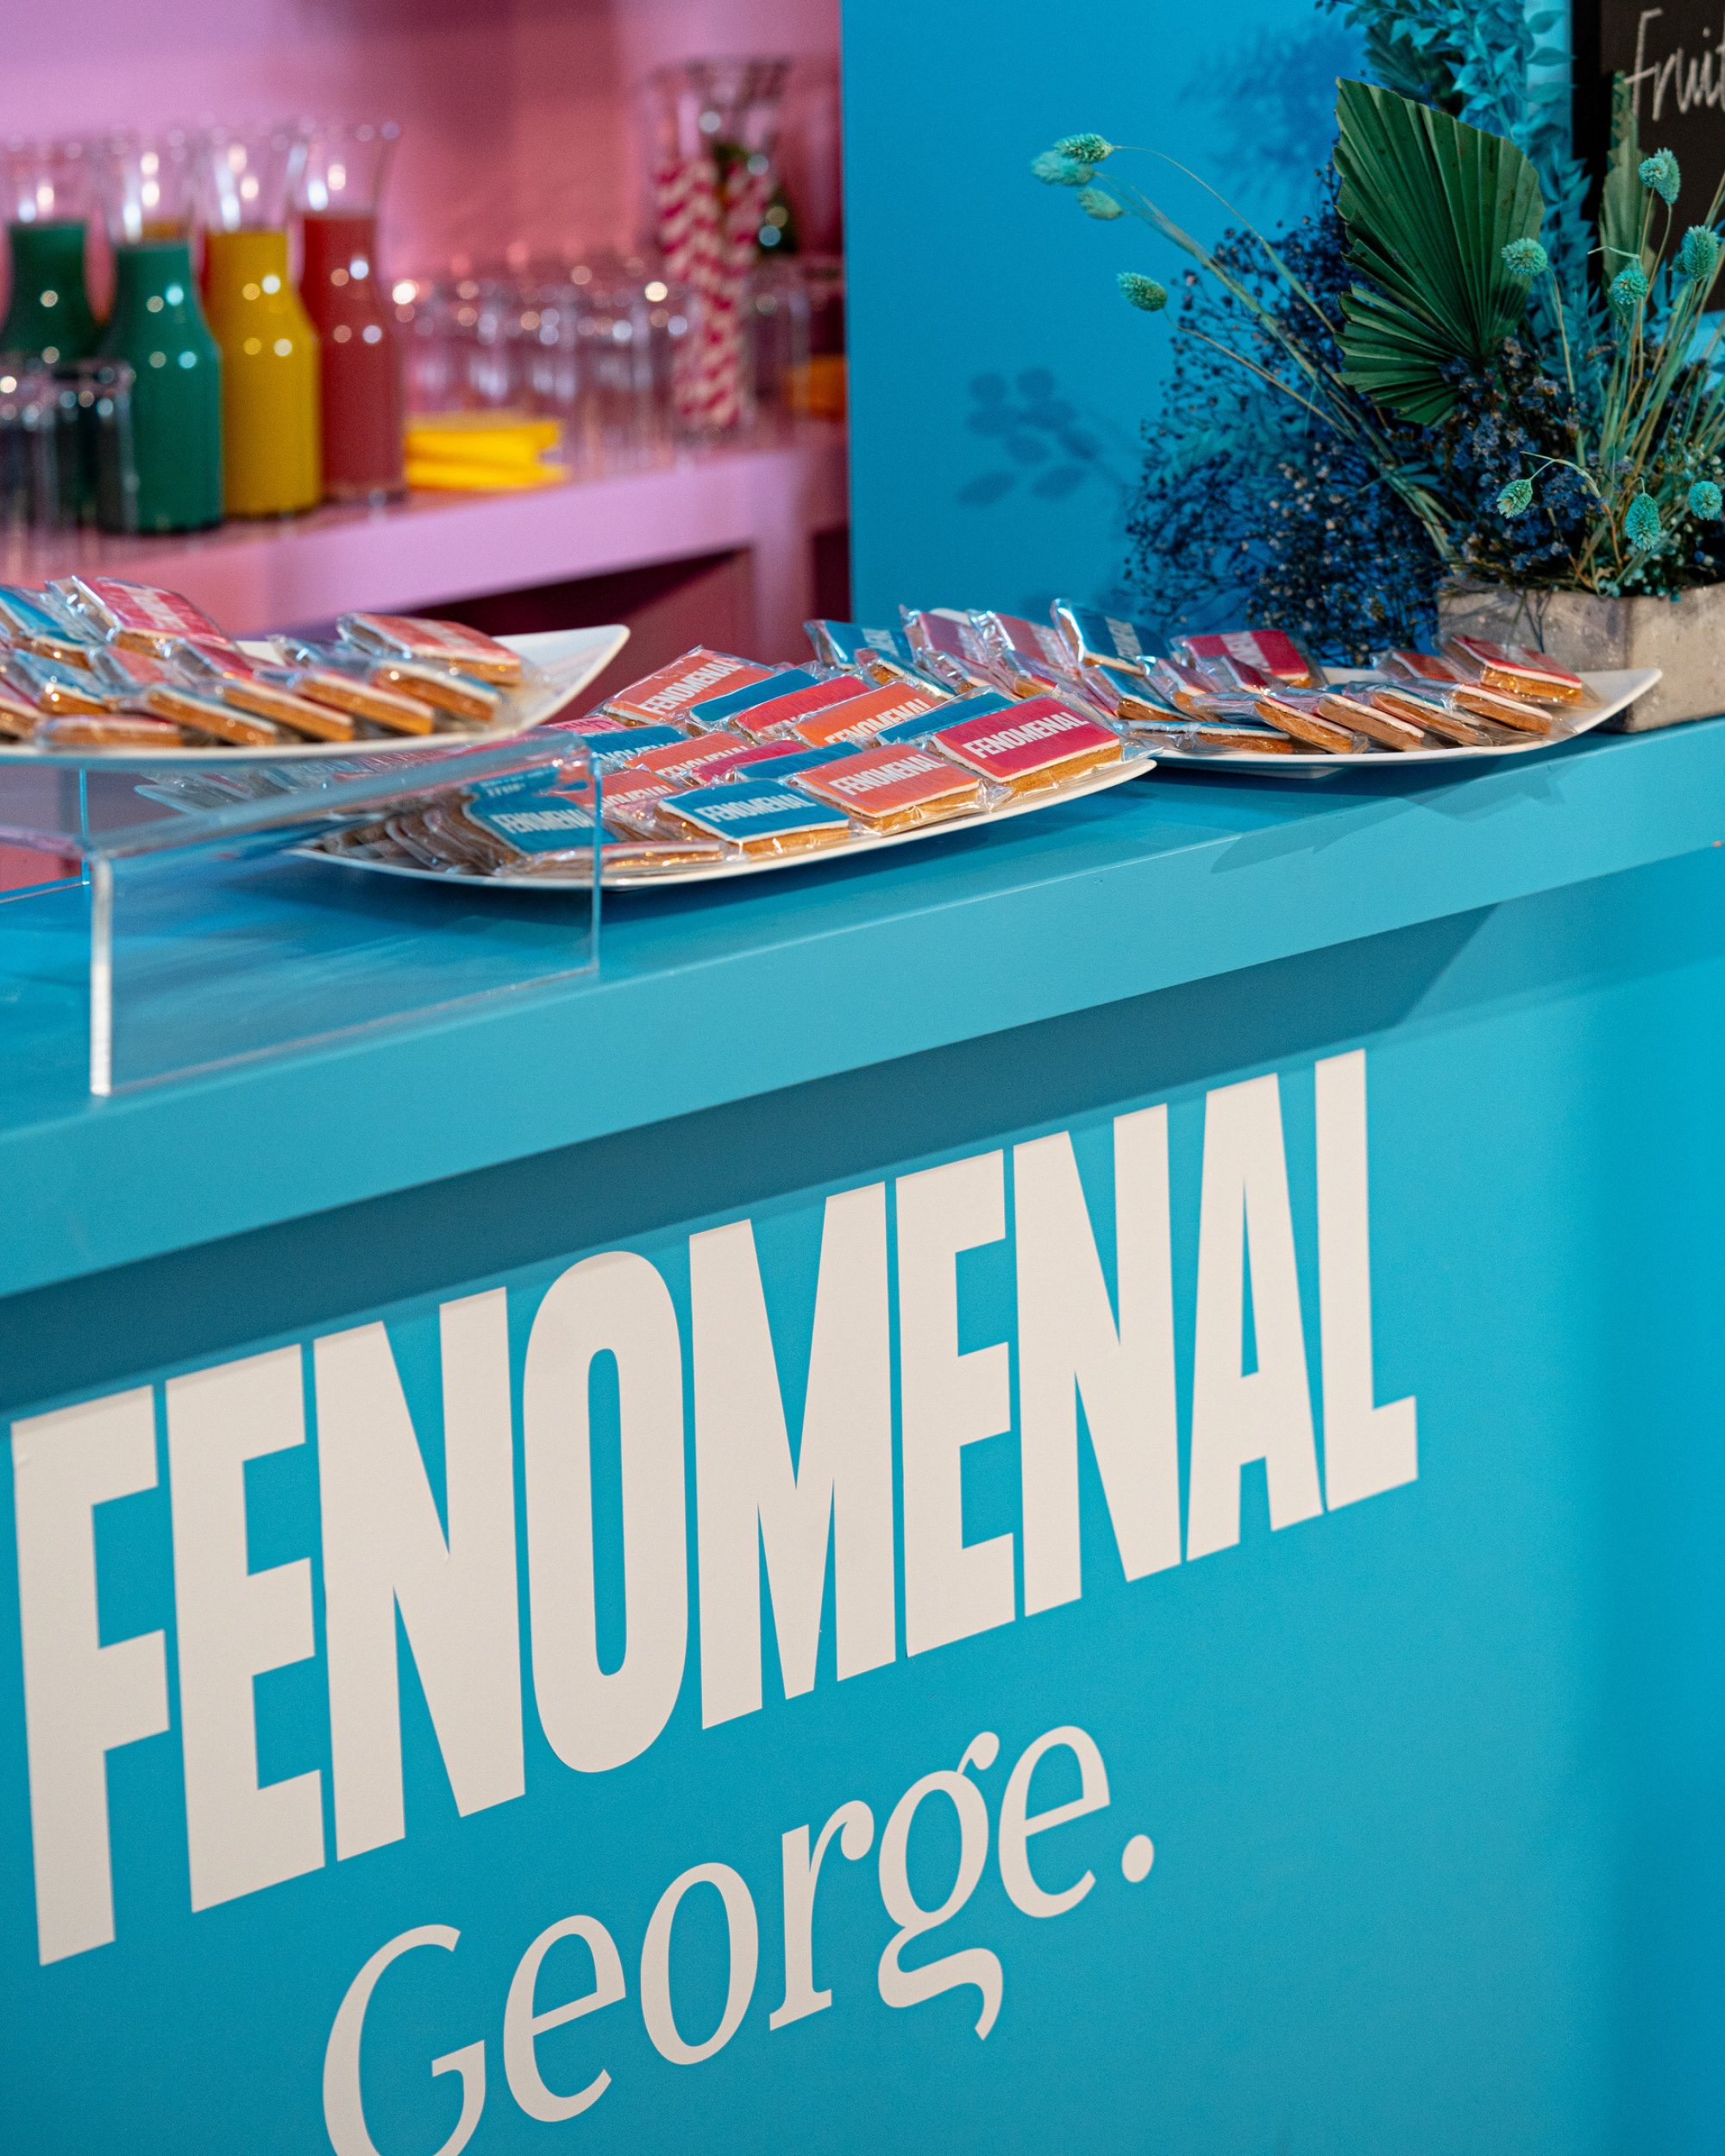 'Fenomenal' campaign launch